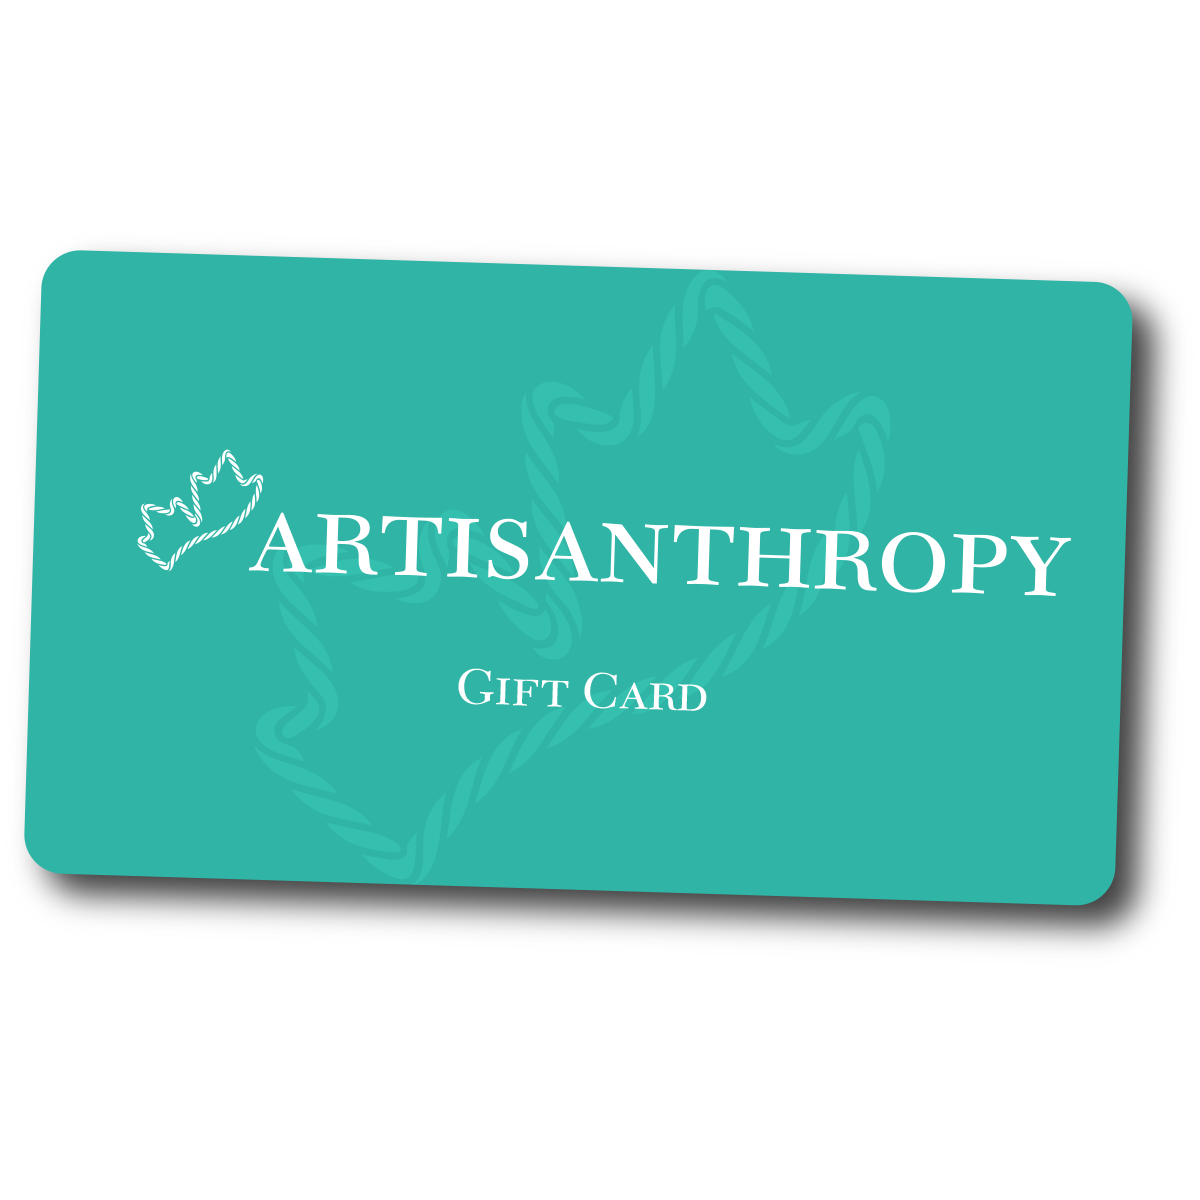 Artisanthropy Gift Card